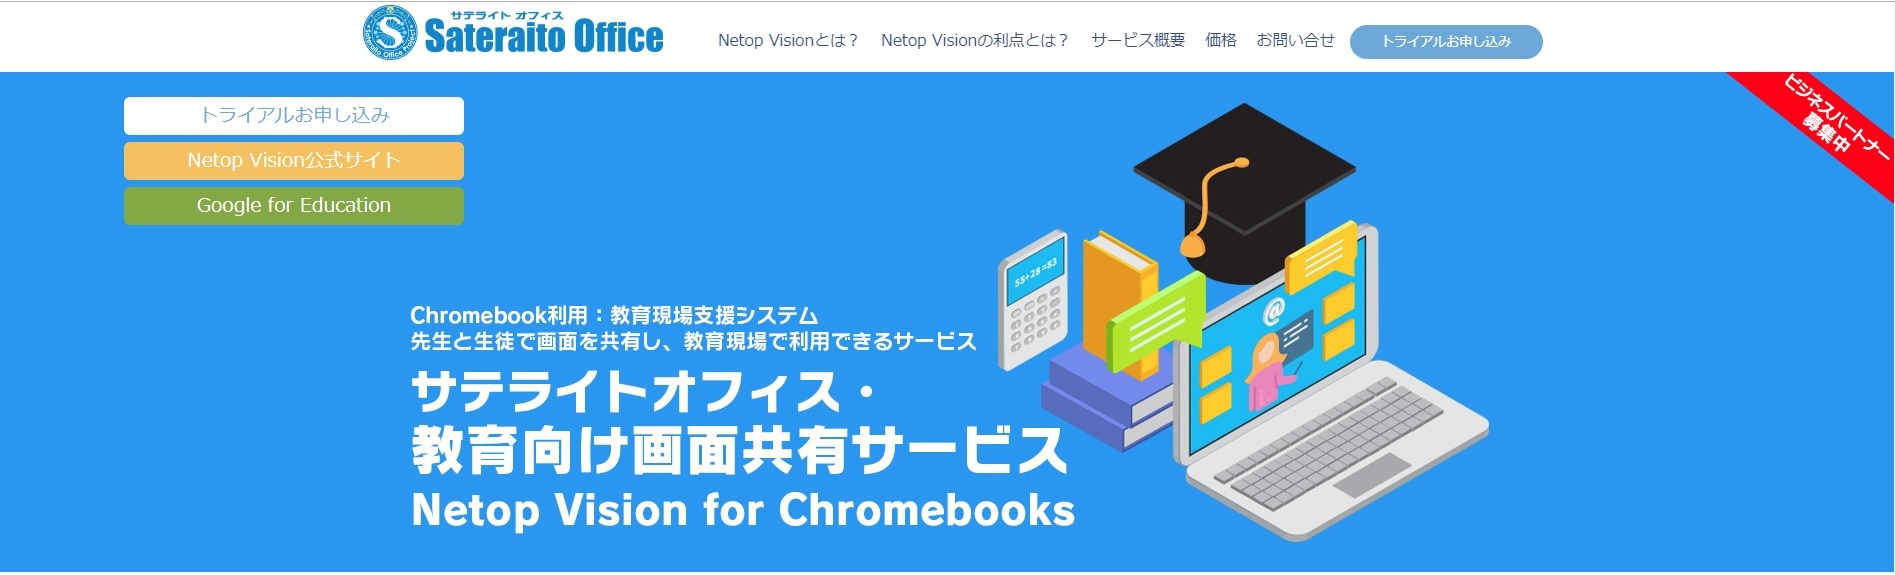 netop vision for chromebooks